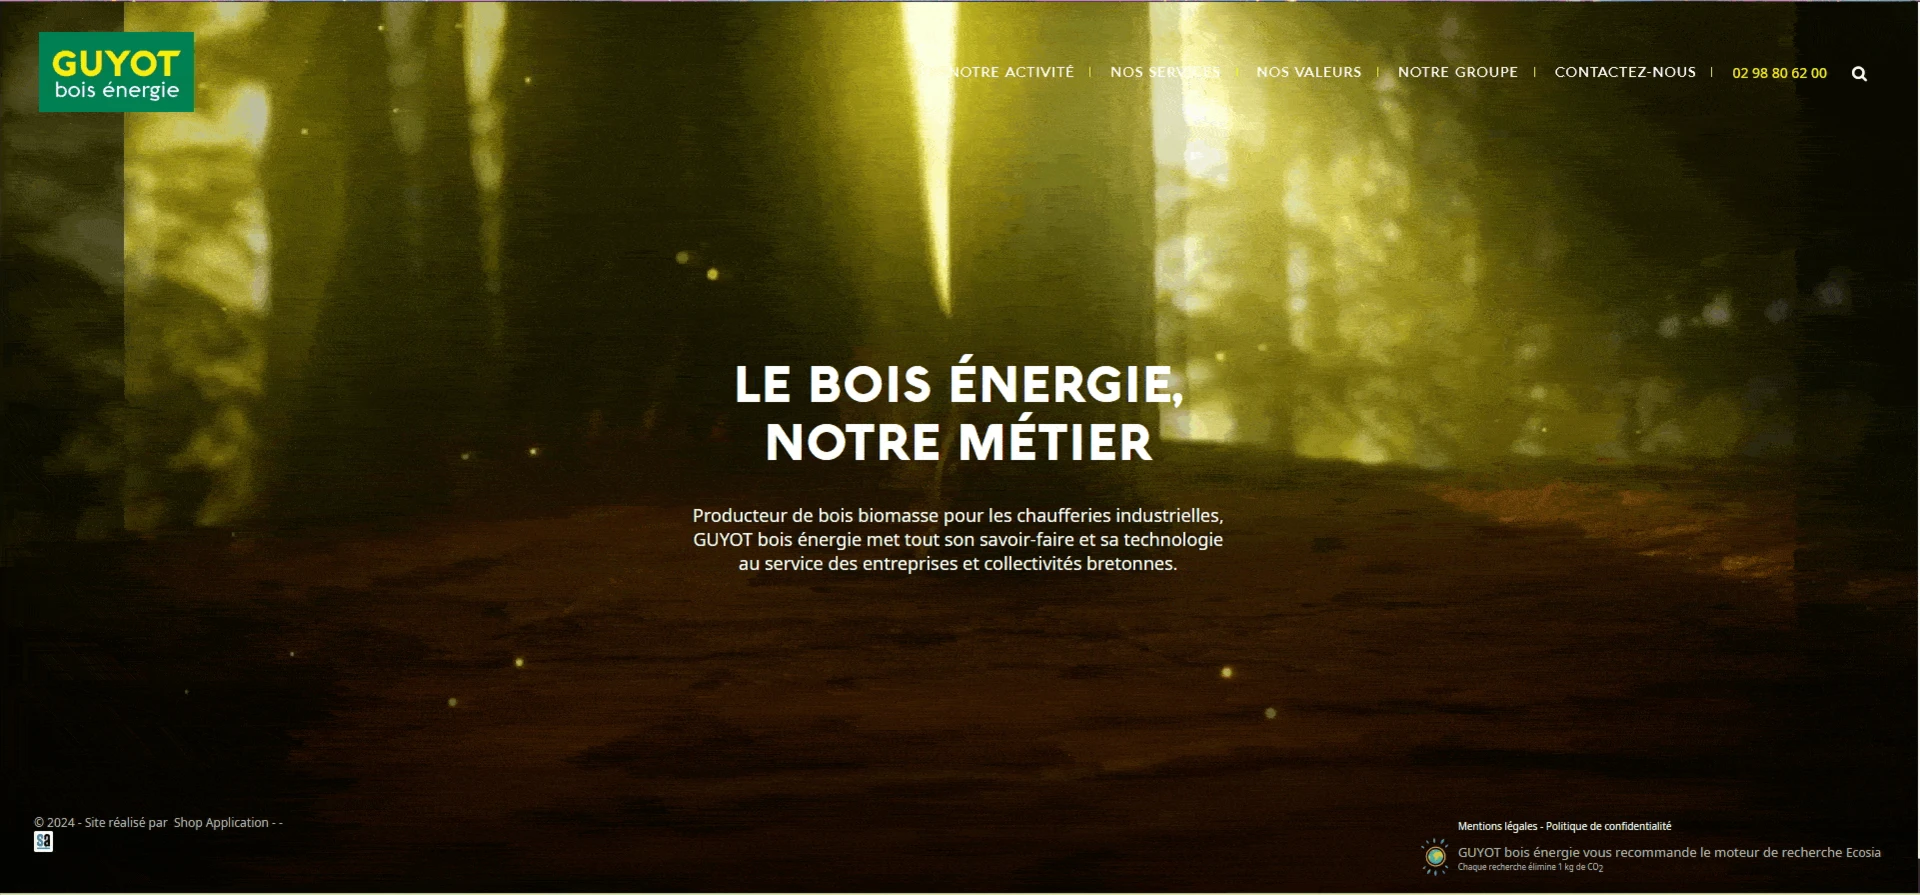 Exemple de diaporama avec une vidéo en page d'accueil du site vitrine Guyot Bois Energie